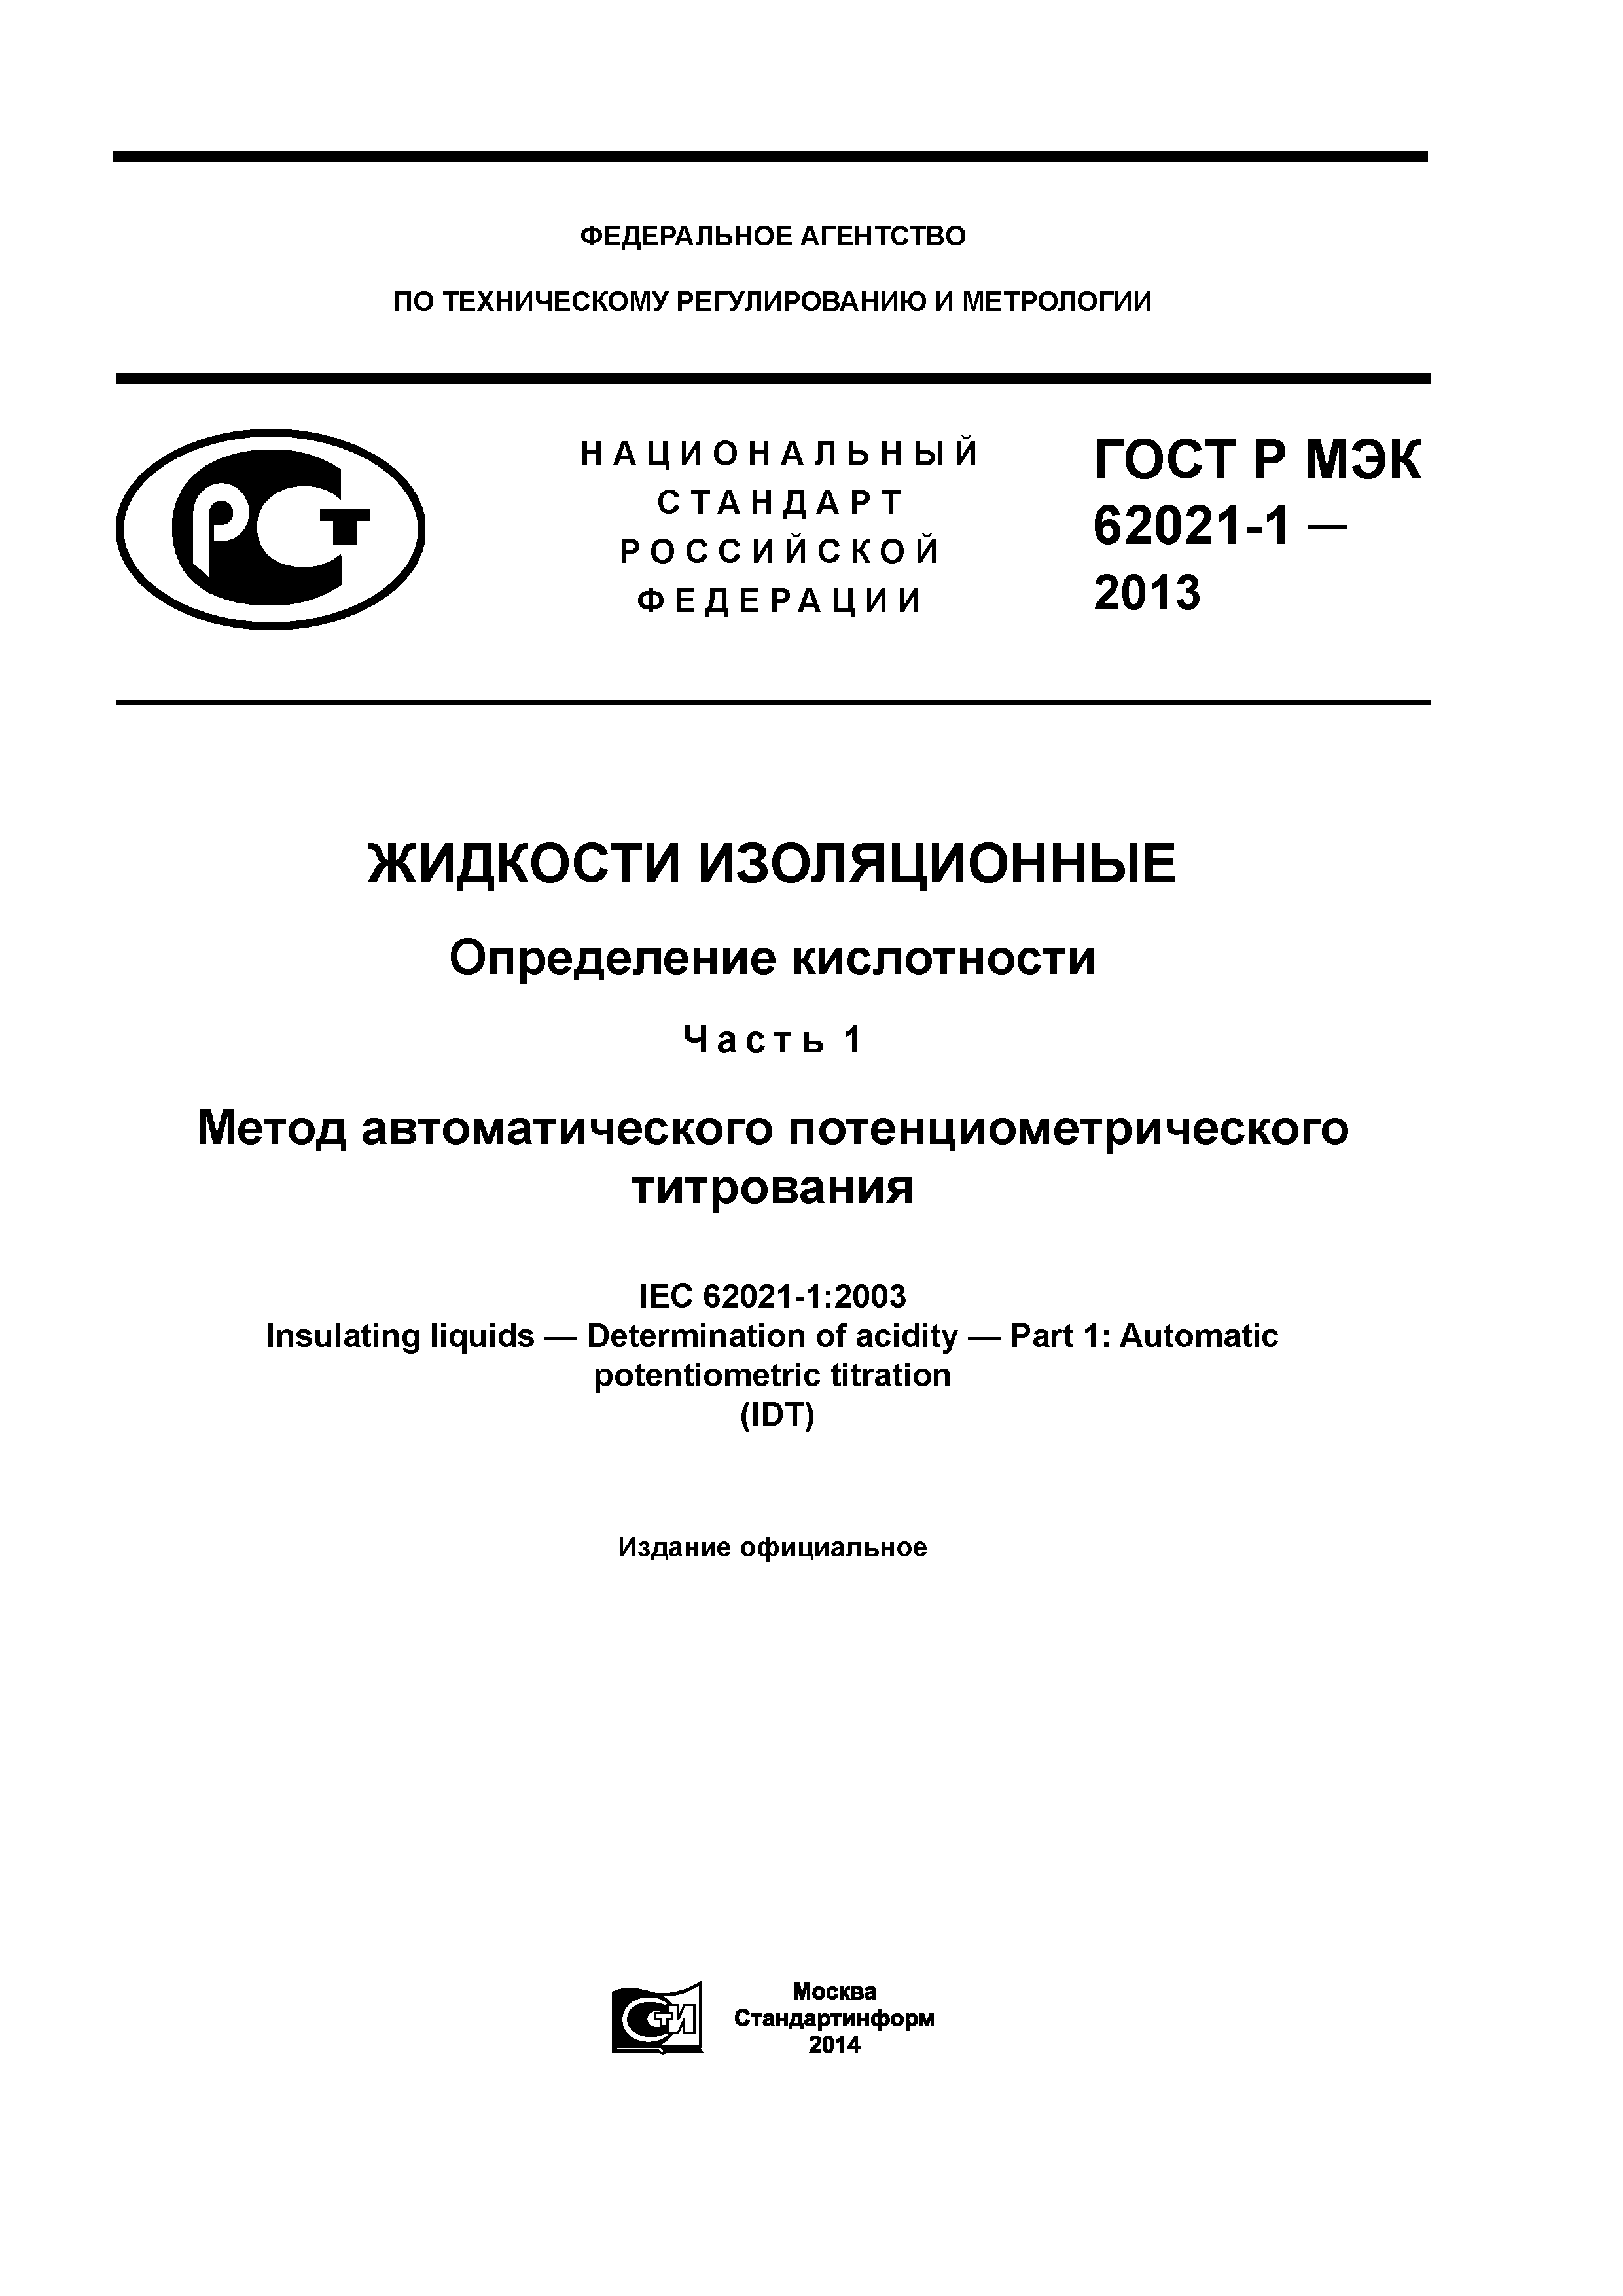 ГОСТ Р МЭК 62021-1-2013